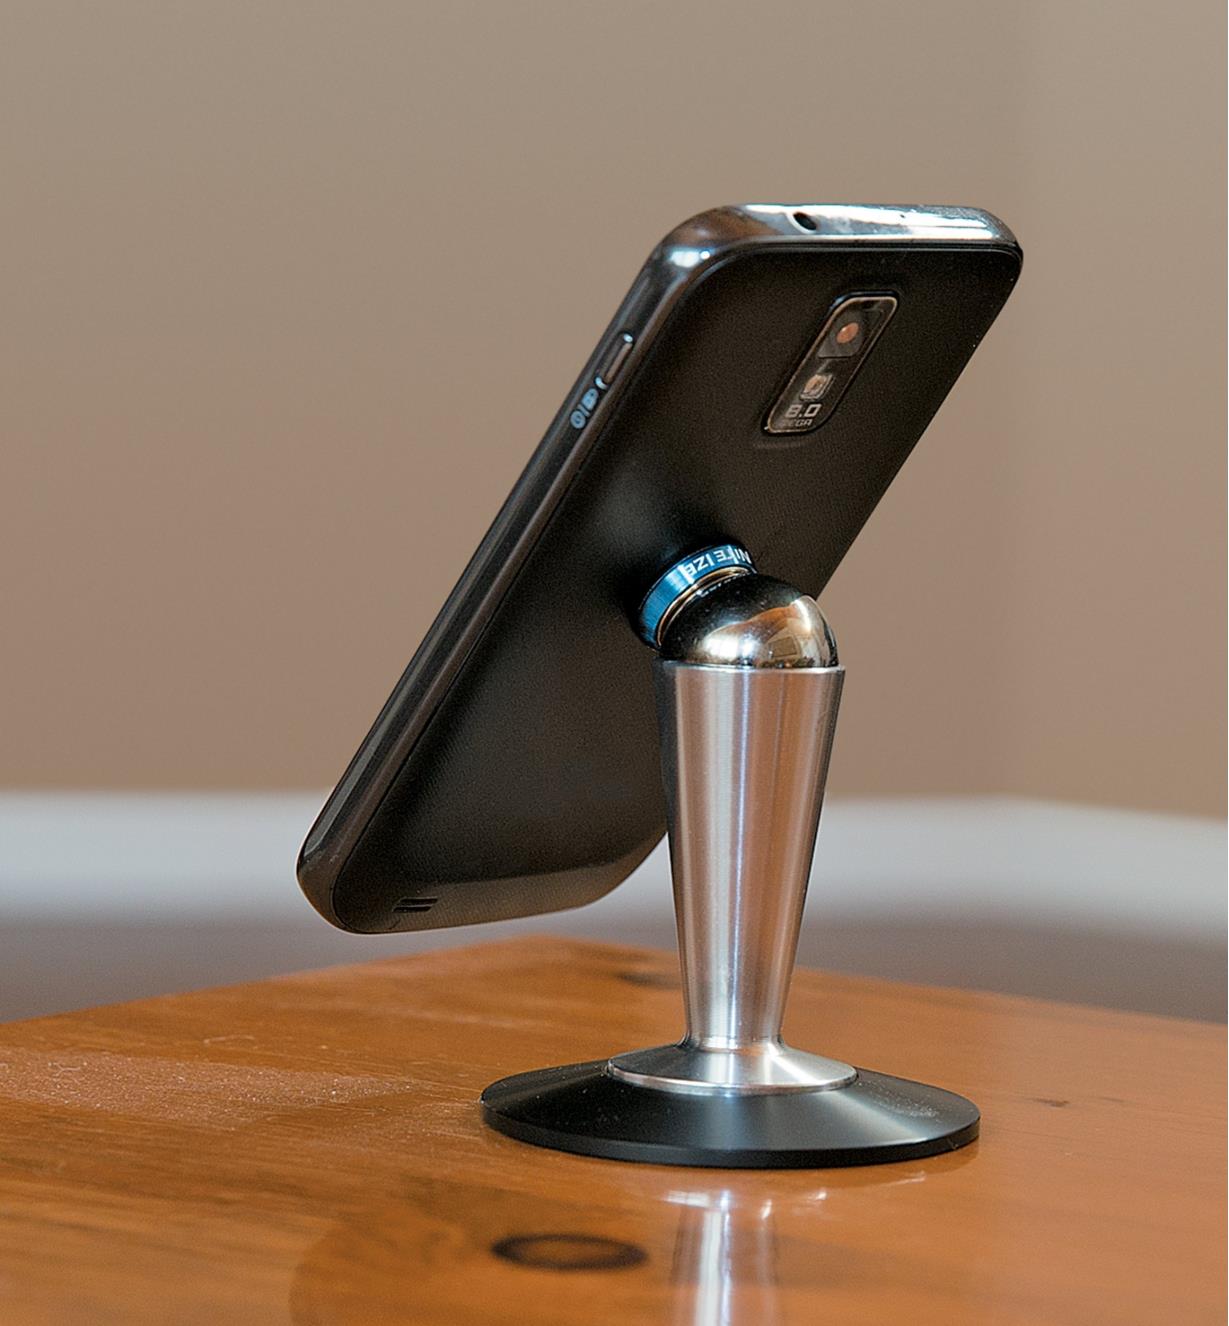 Steelie Smartphone Pedestal holding a phone vertically